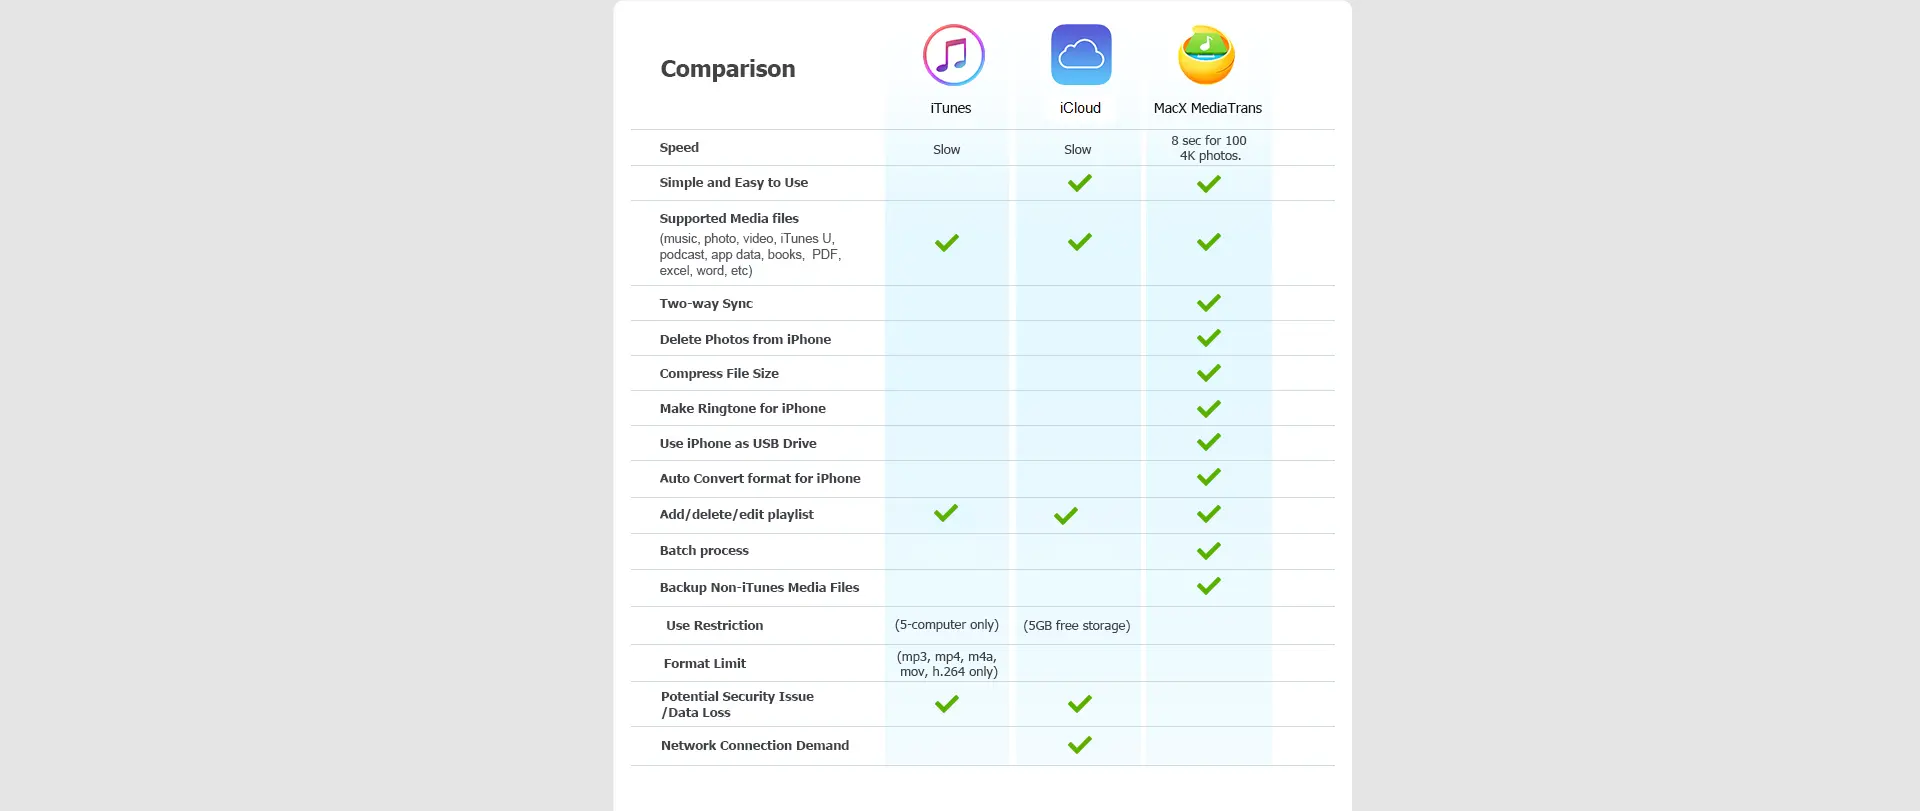 iTunes VS iCloud VS Macx Mediatrans[5439]